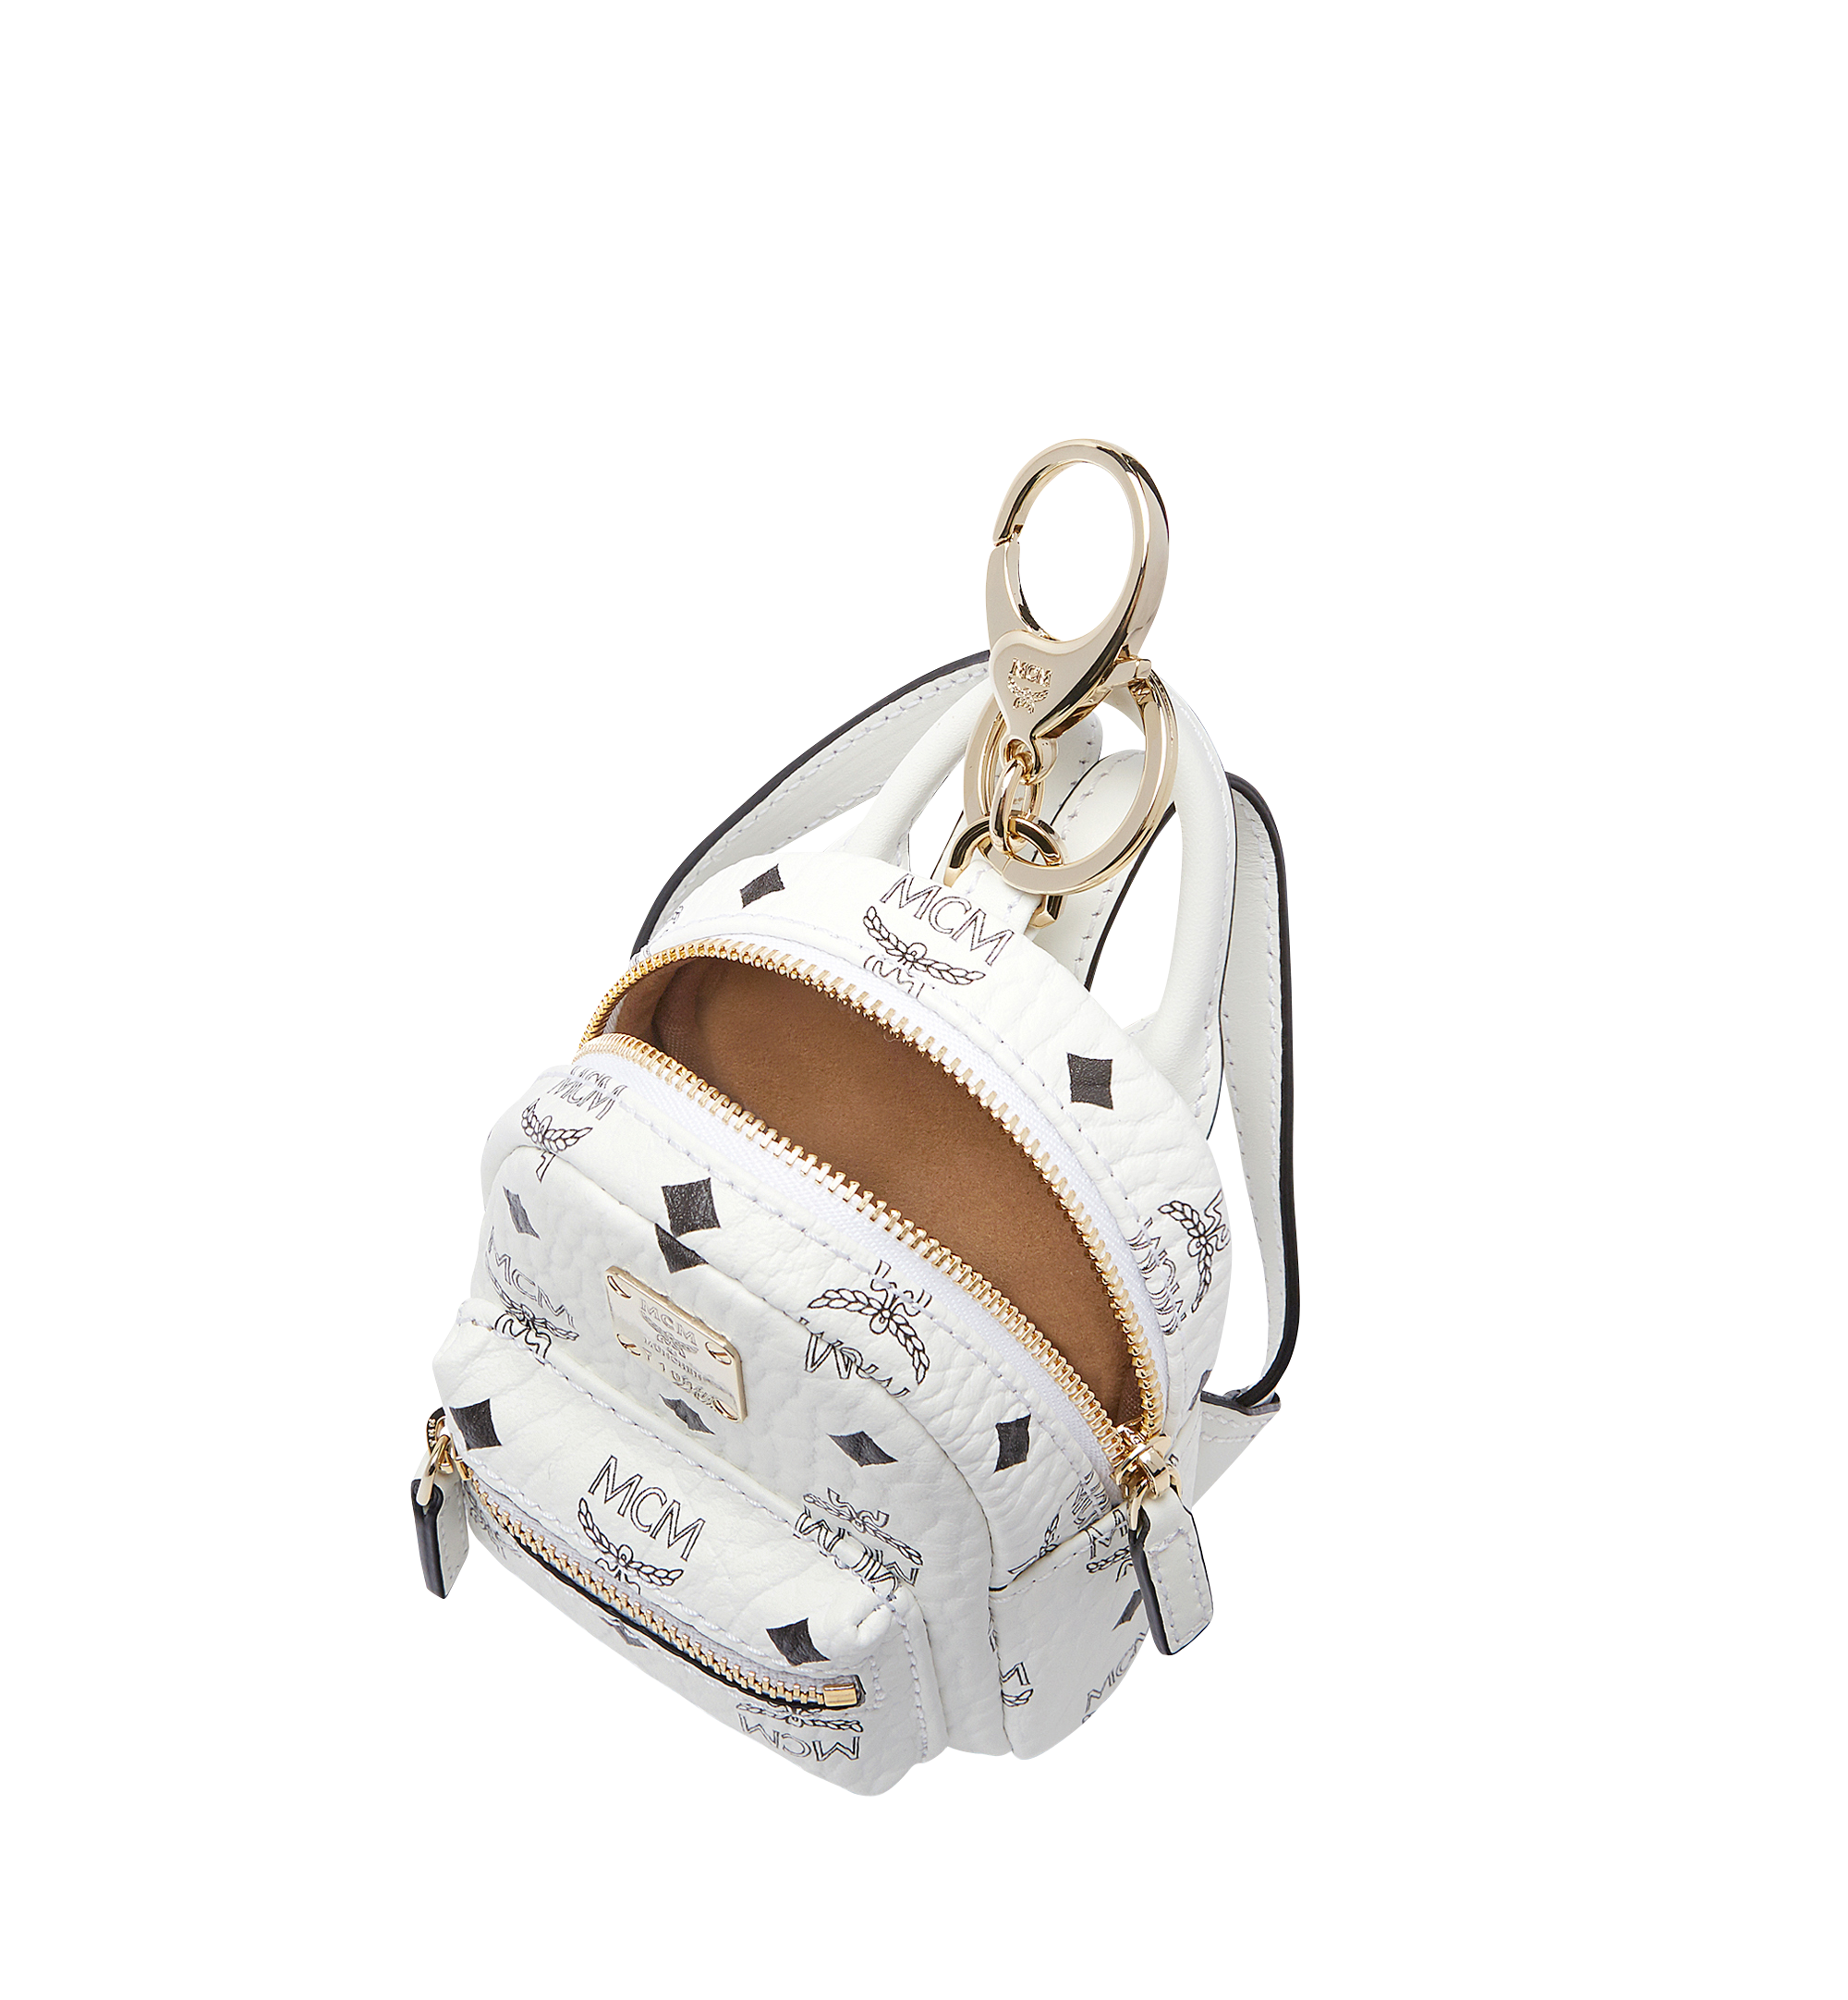 Mcm Mini Backpack Keychain